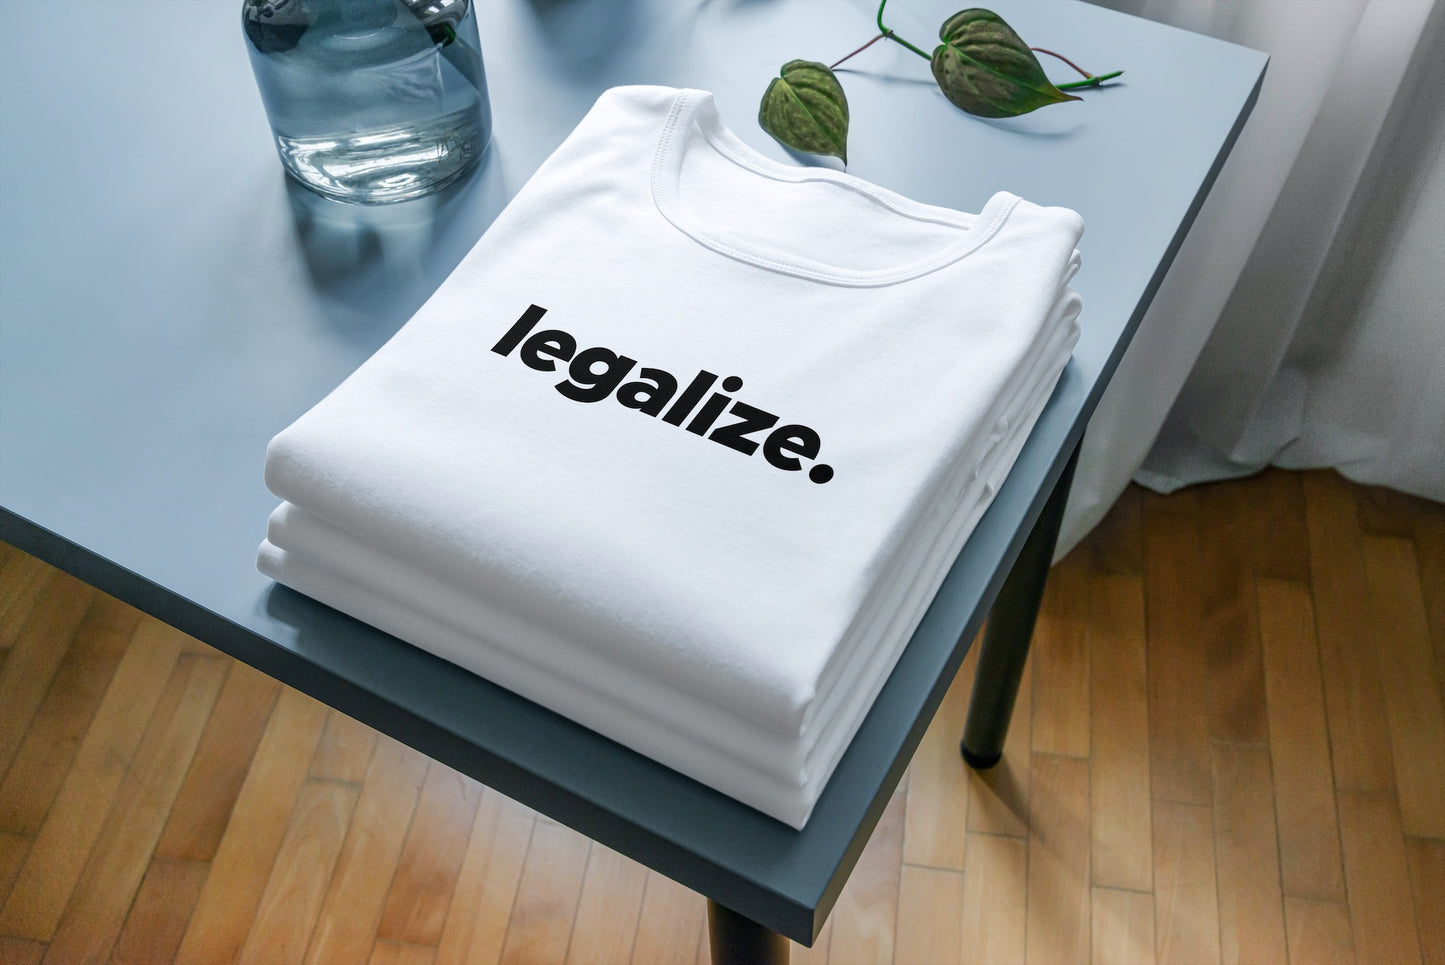 Tričko s krátkým rukávem Legalize